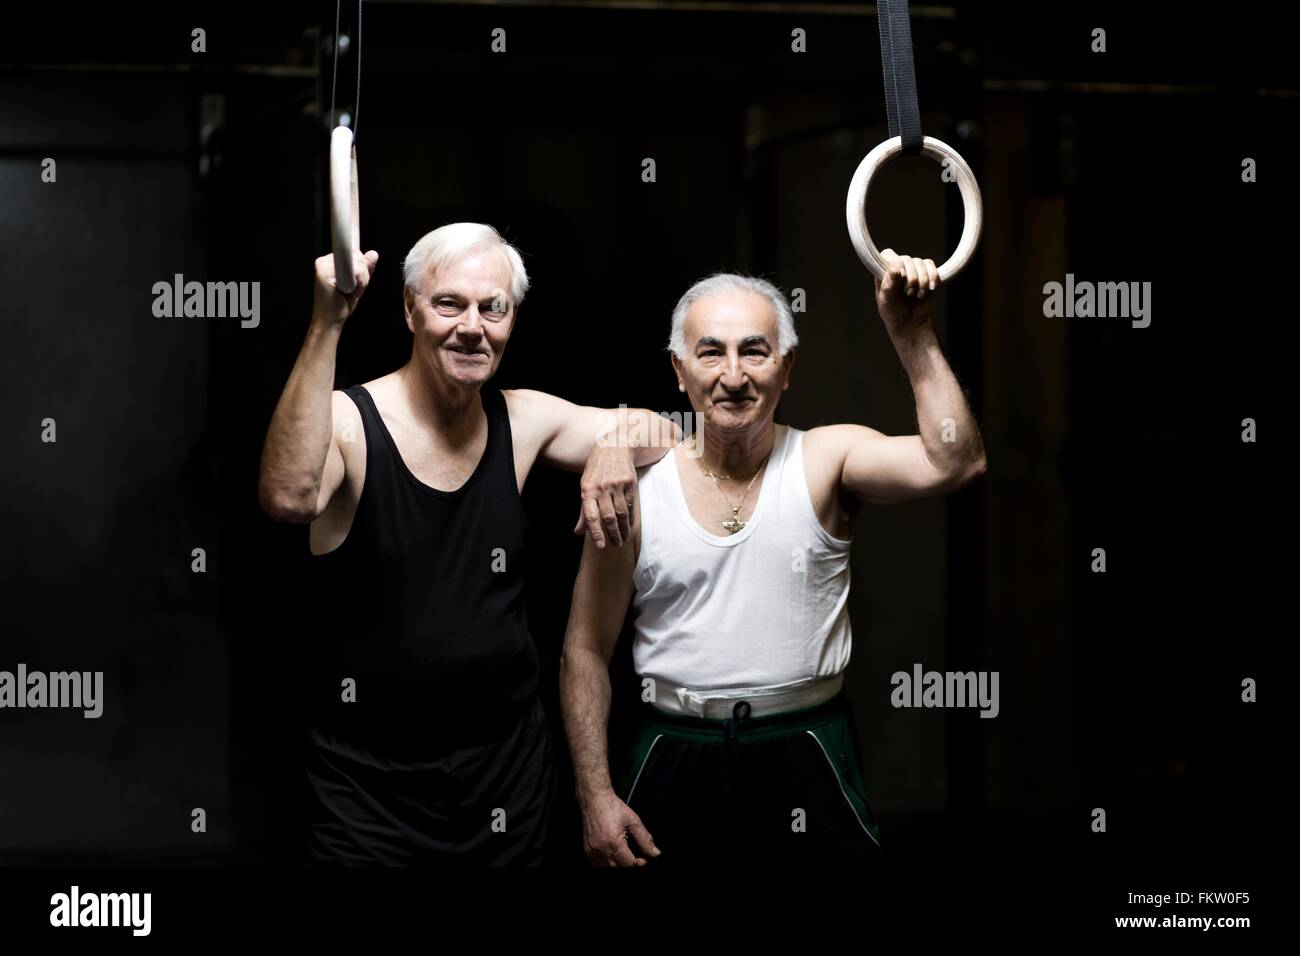 Portrait de deux hommes tenant des anneaux de gymnastique en salle de sport Banque D'Images